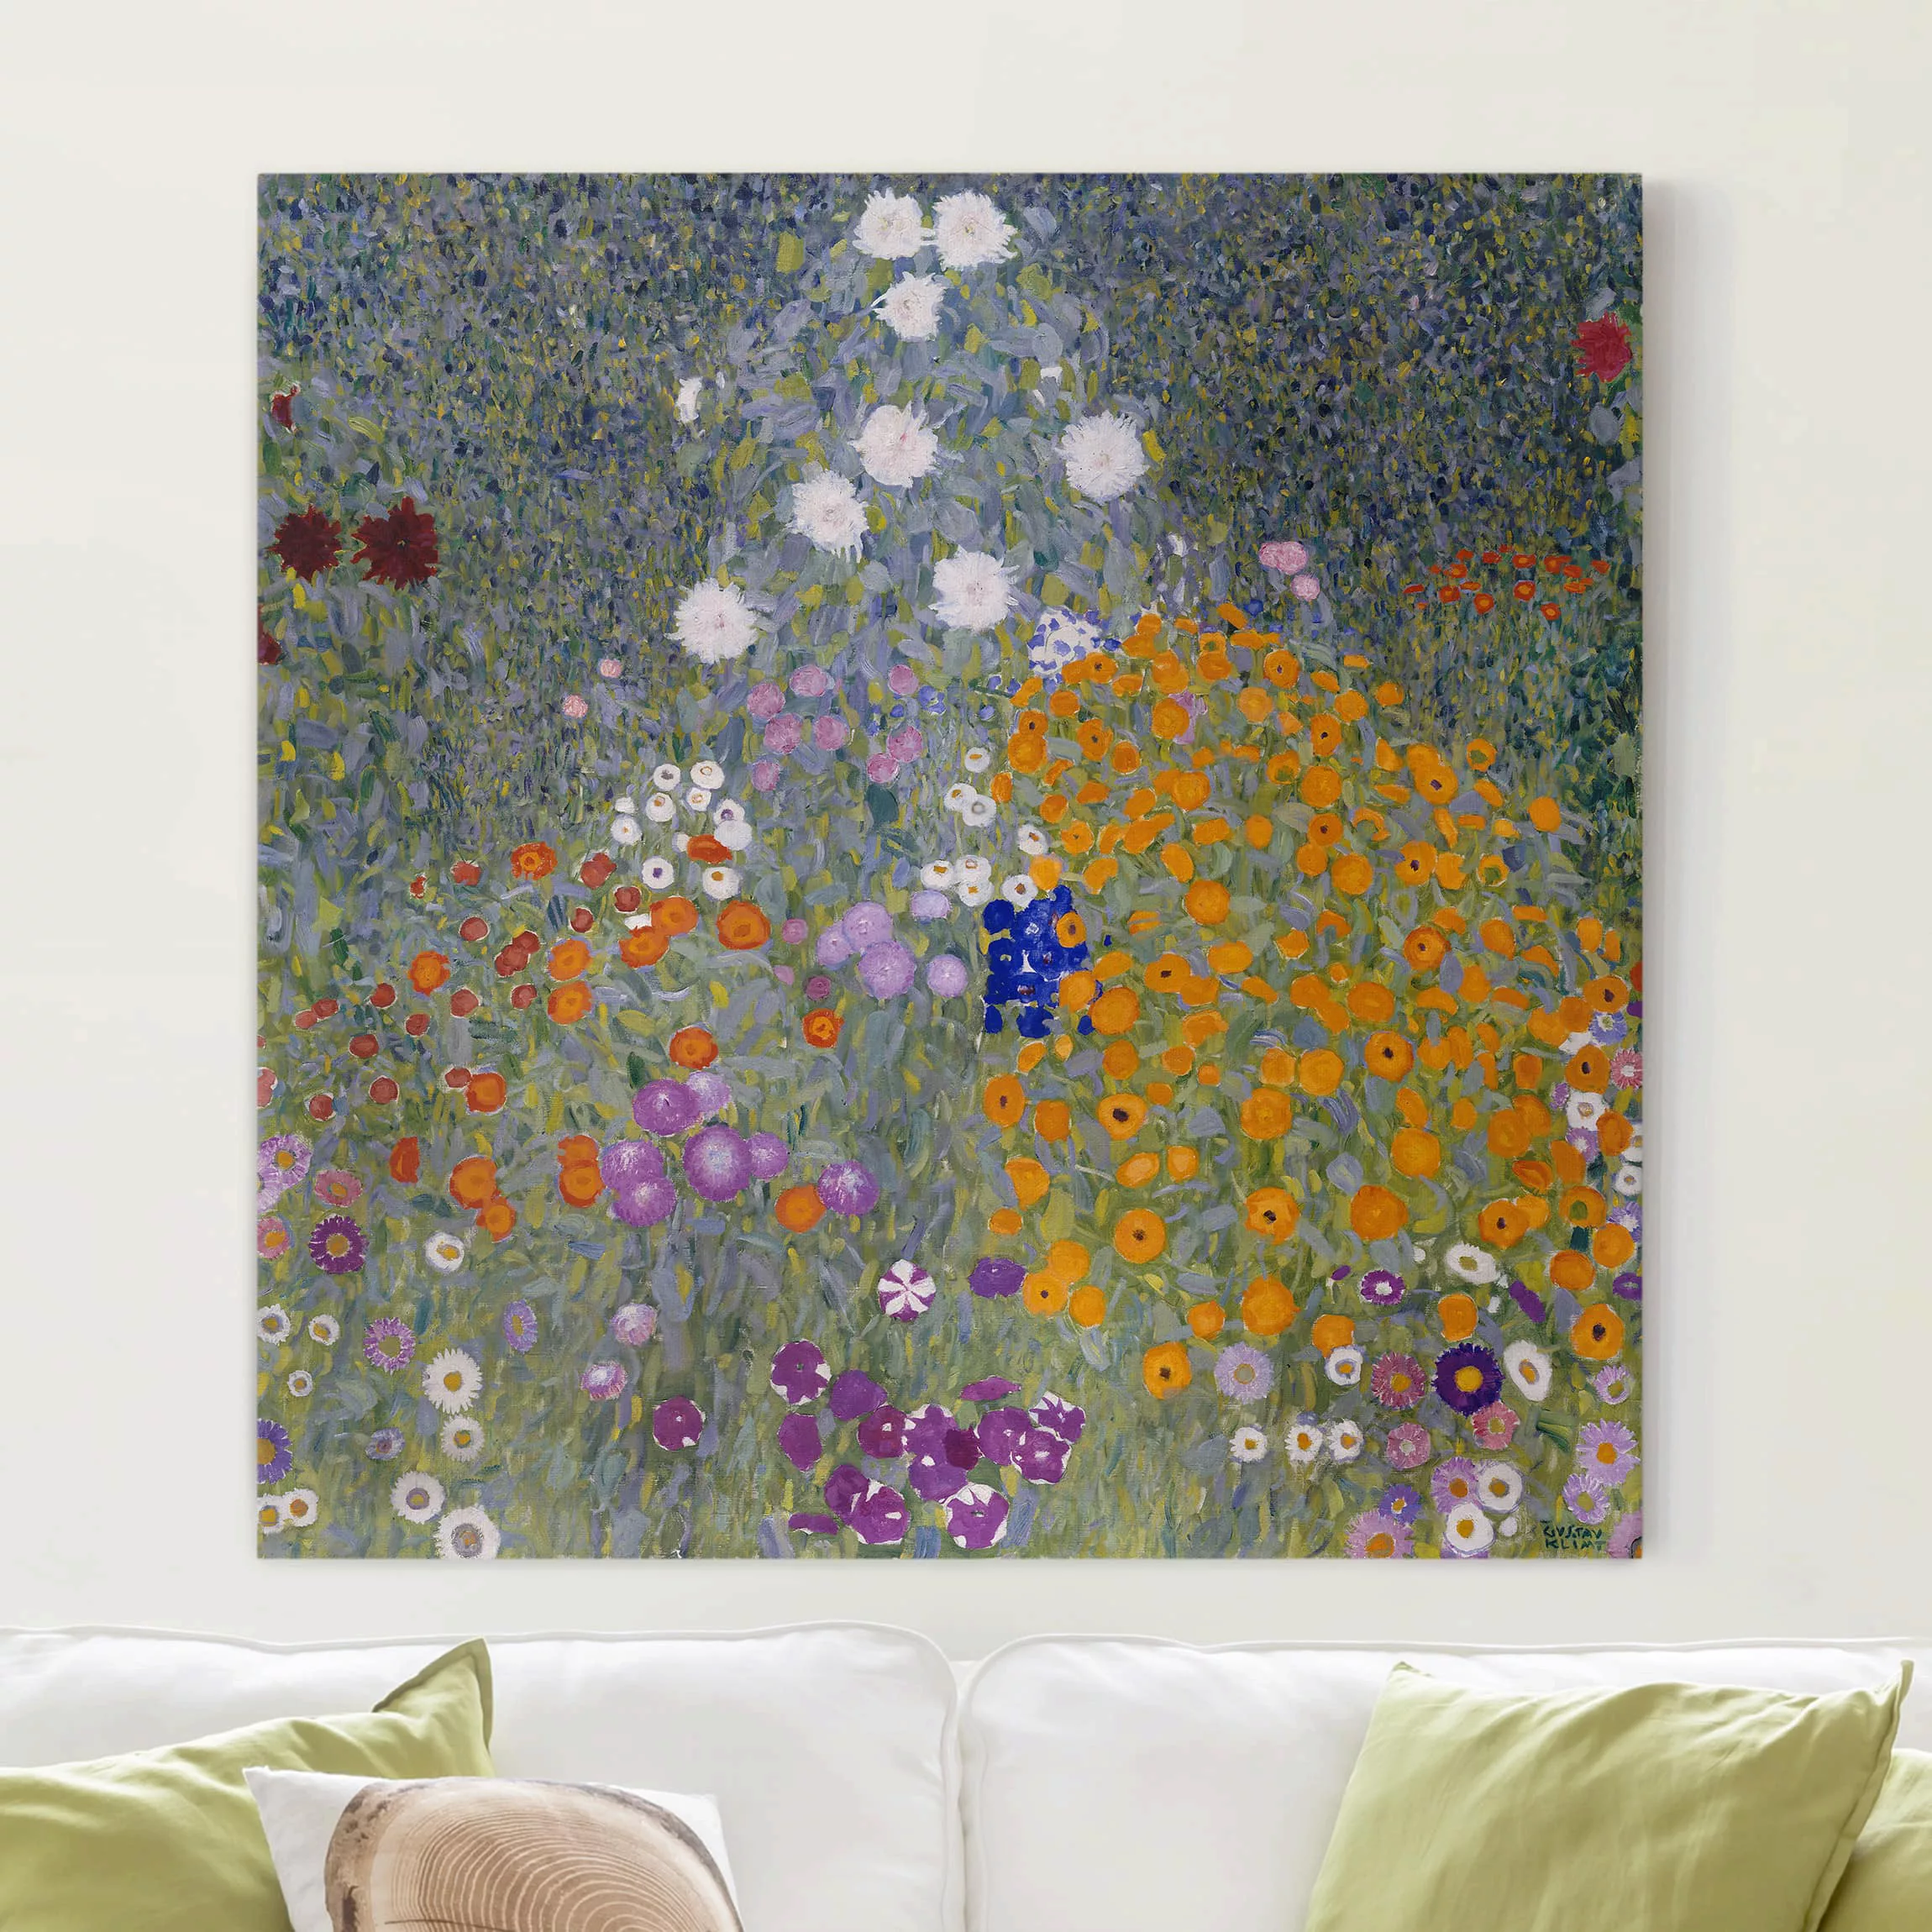 Leinwandbild Kunstdruck - Quadrat Gustav Klimt - Bauerngarten günstig online kaufen